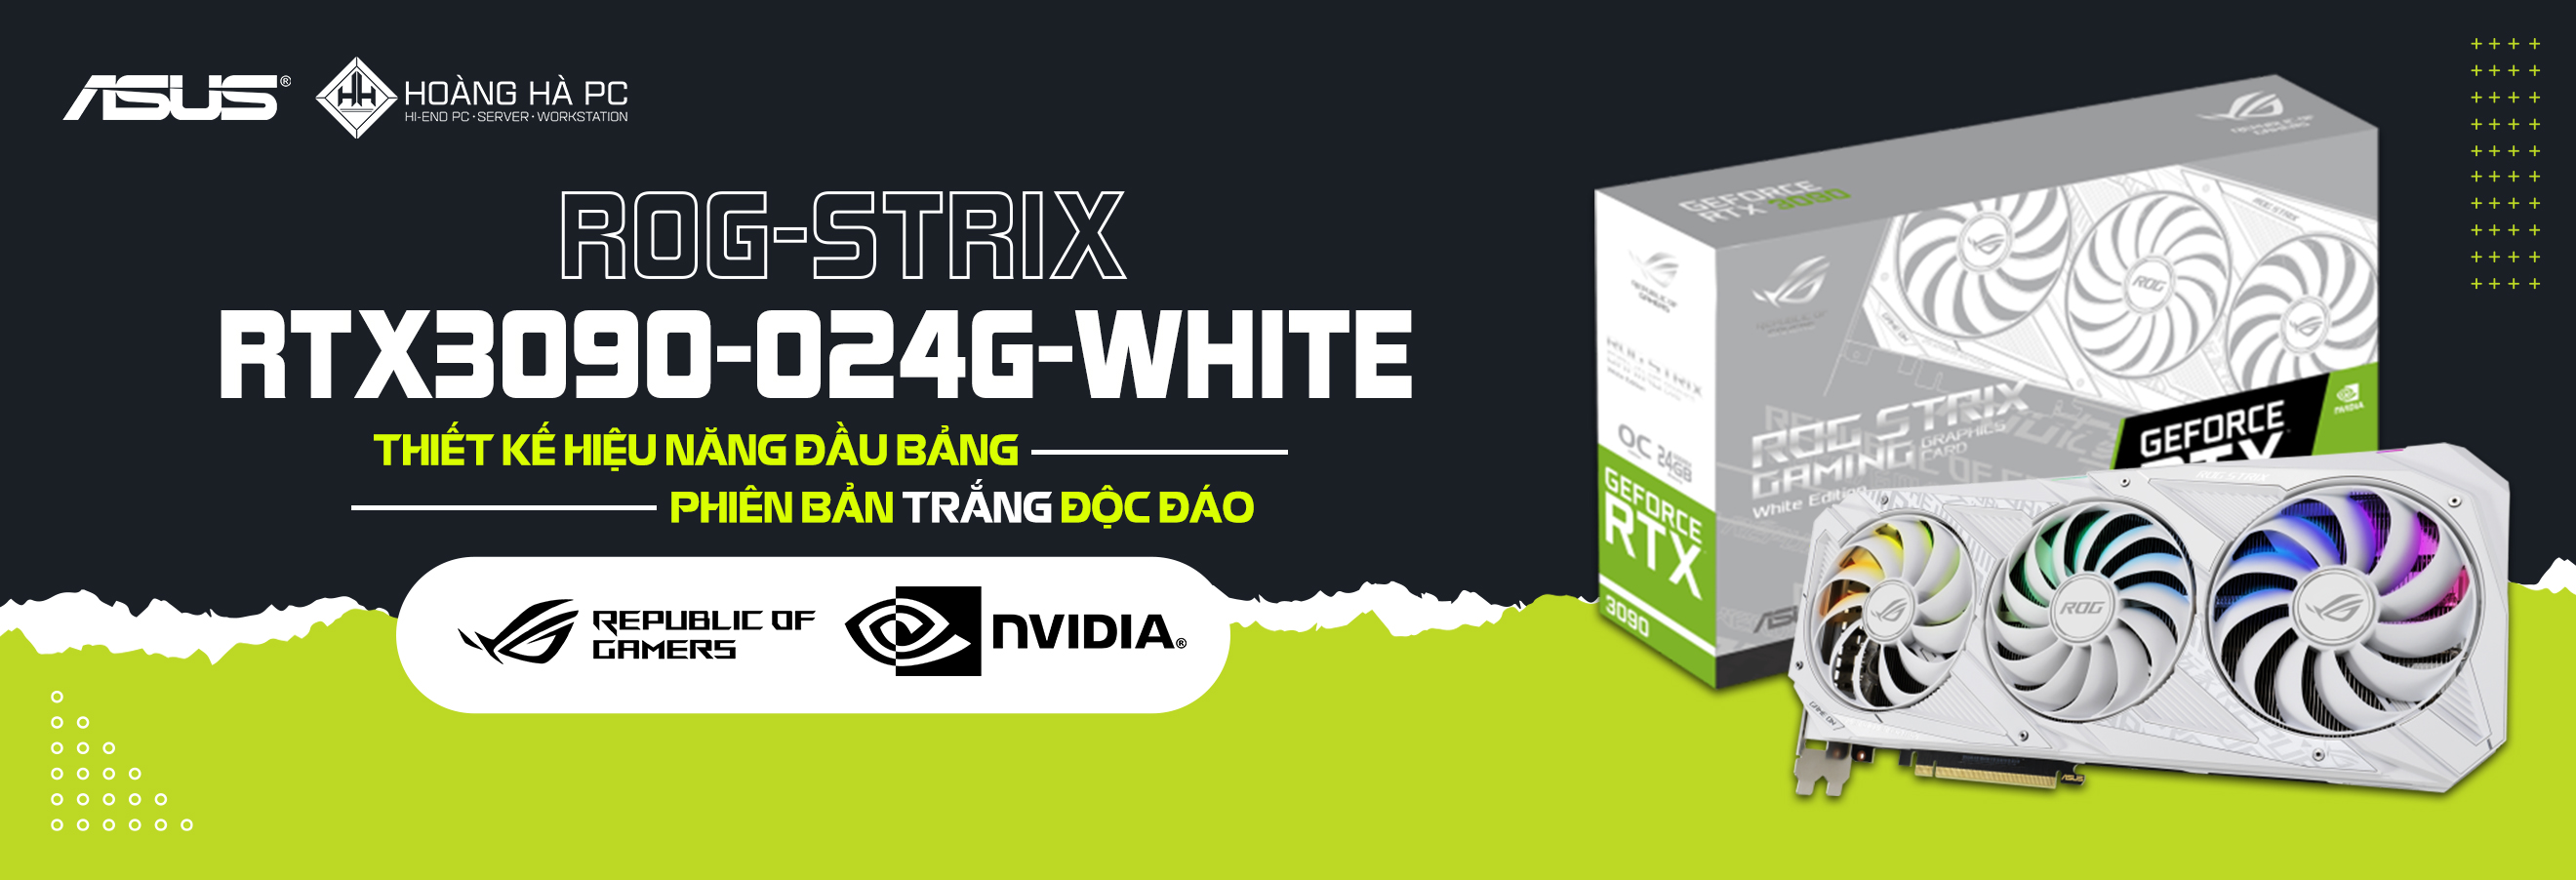 Asus ROG STRIX RTX 3090 GAMING WHITE